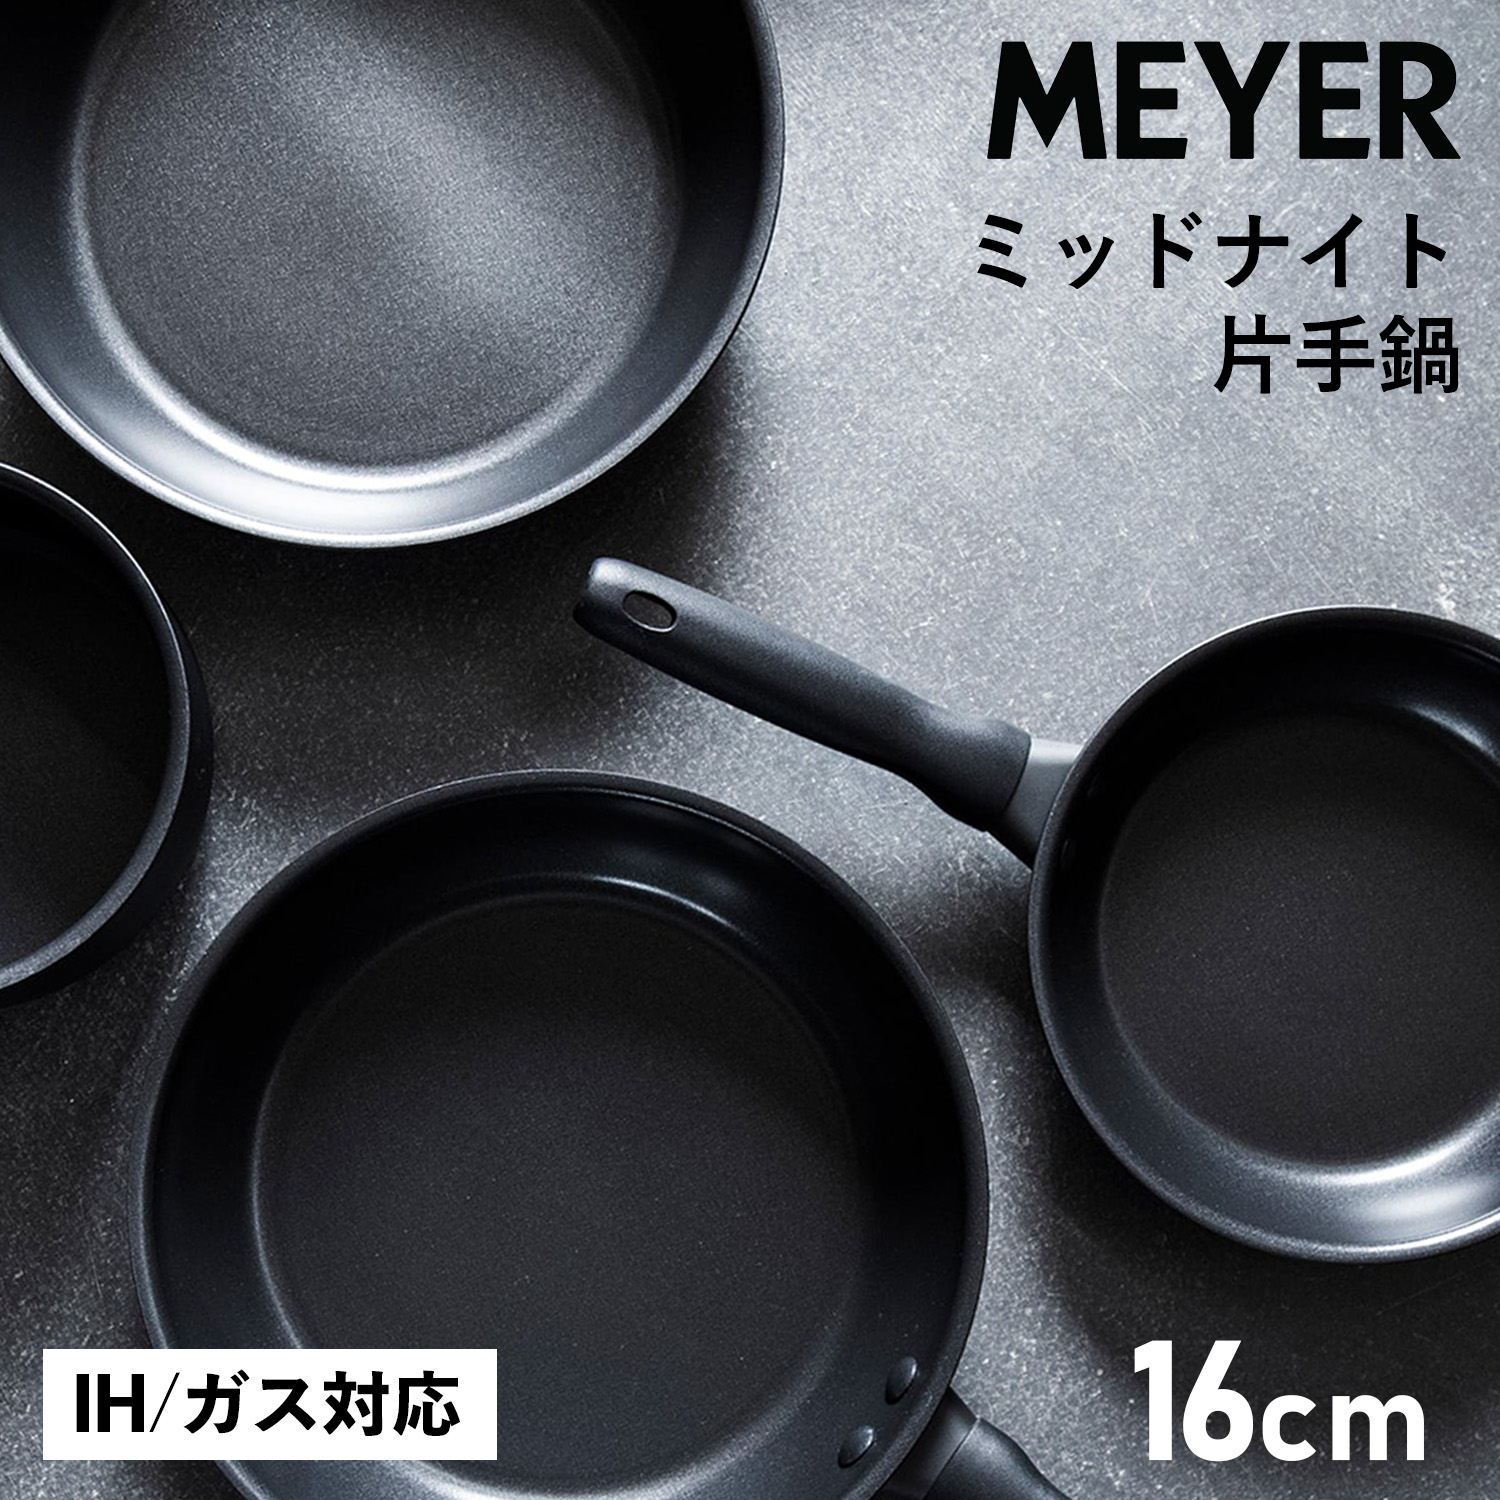 マイヤー MEYER 鍋 片手鍋 16cm ミッドナイト IH ガス対応 MIDNIGHT MNH-S16